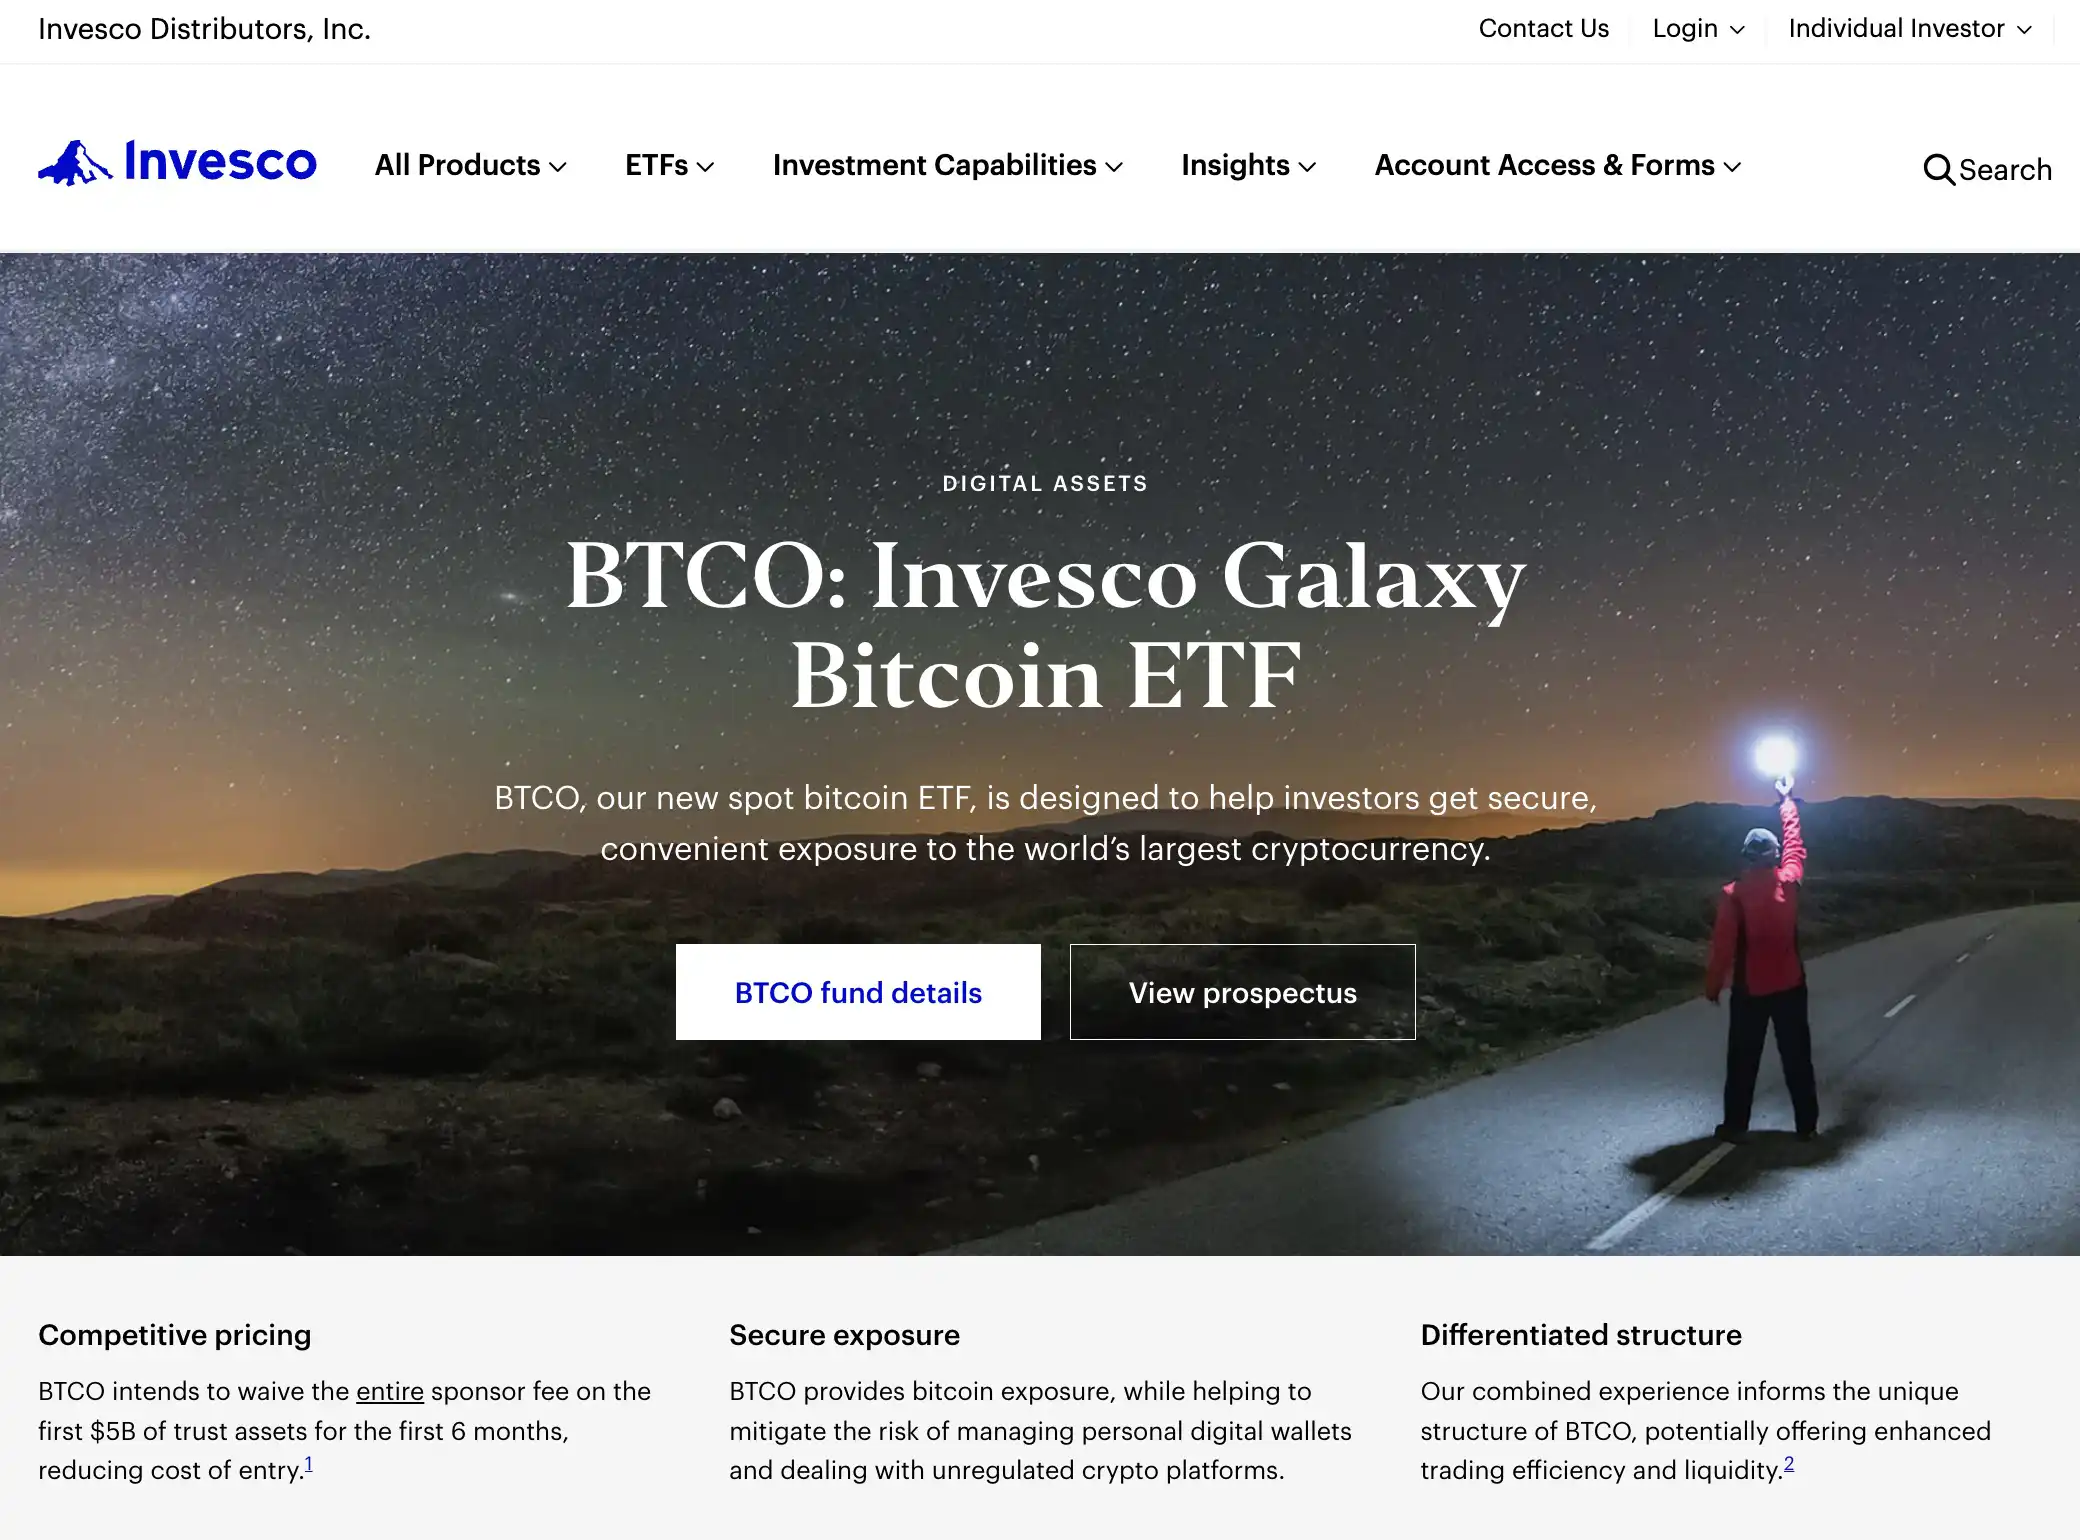 Invesco Galaxy Bitcoin ETF (BTCO)